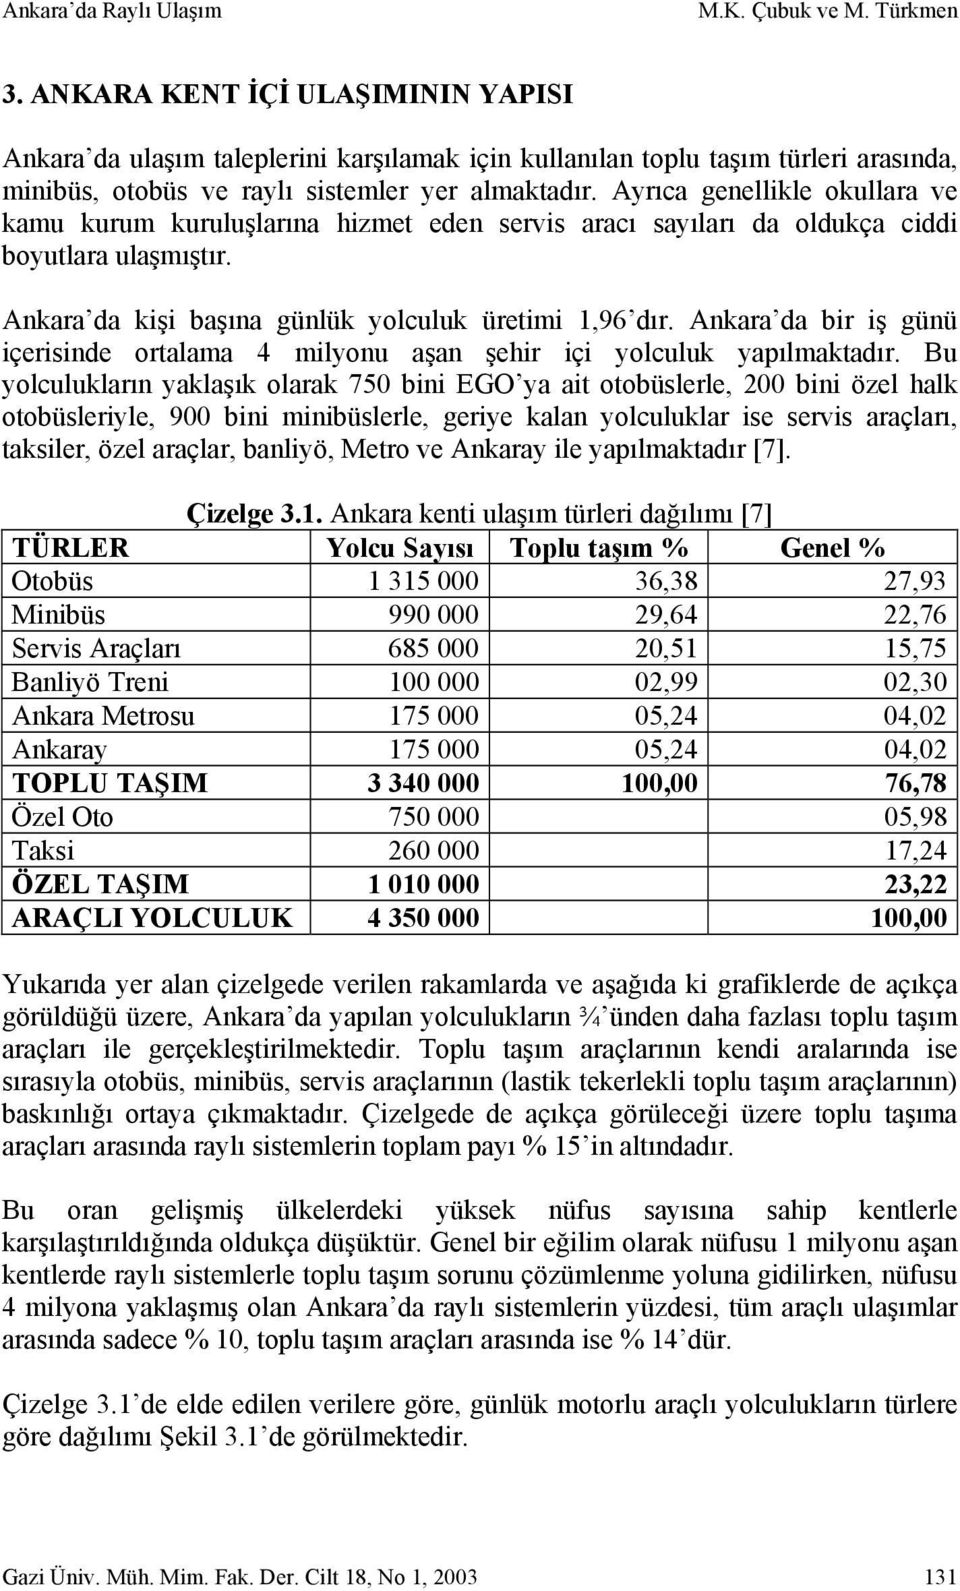 Ayrıca genellikle okullara ve kamu kurum kuruluşlarına hizmet eden servis aracı sayıları da oldukça ciddi boyutlara ulaşmıştır. Ankara da kişi başına günlük yolculuk üretimi 1,96 dır.